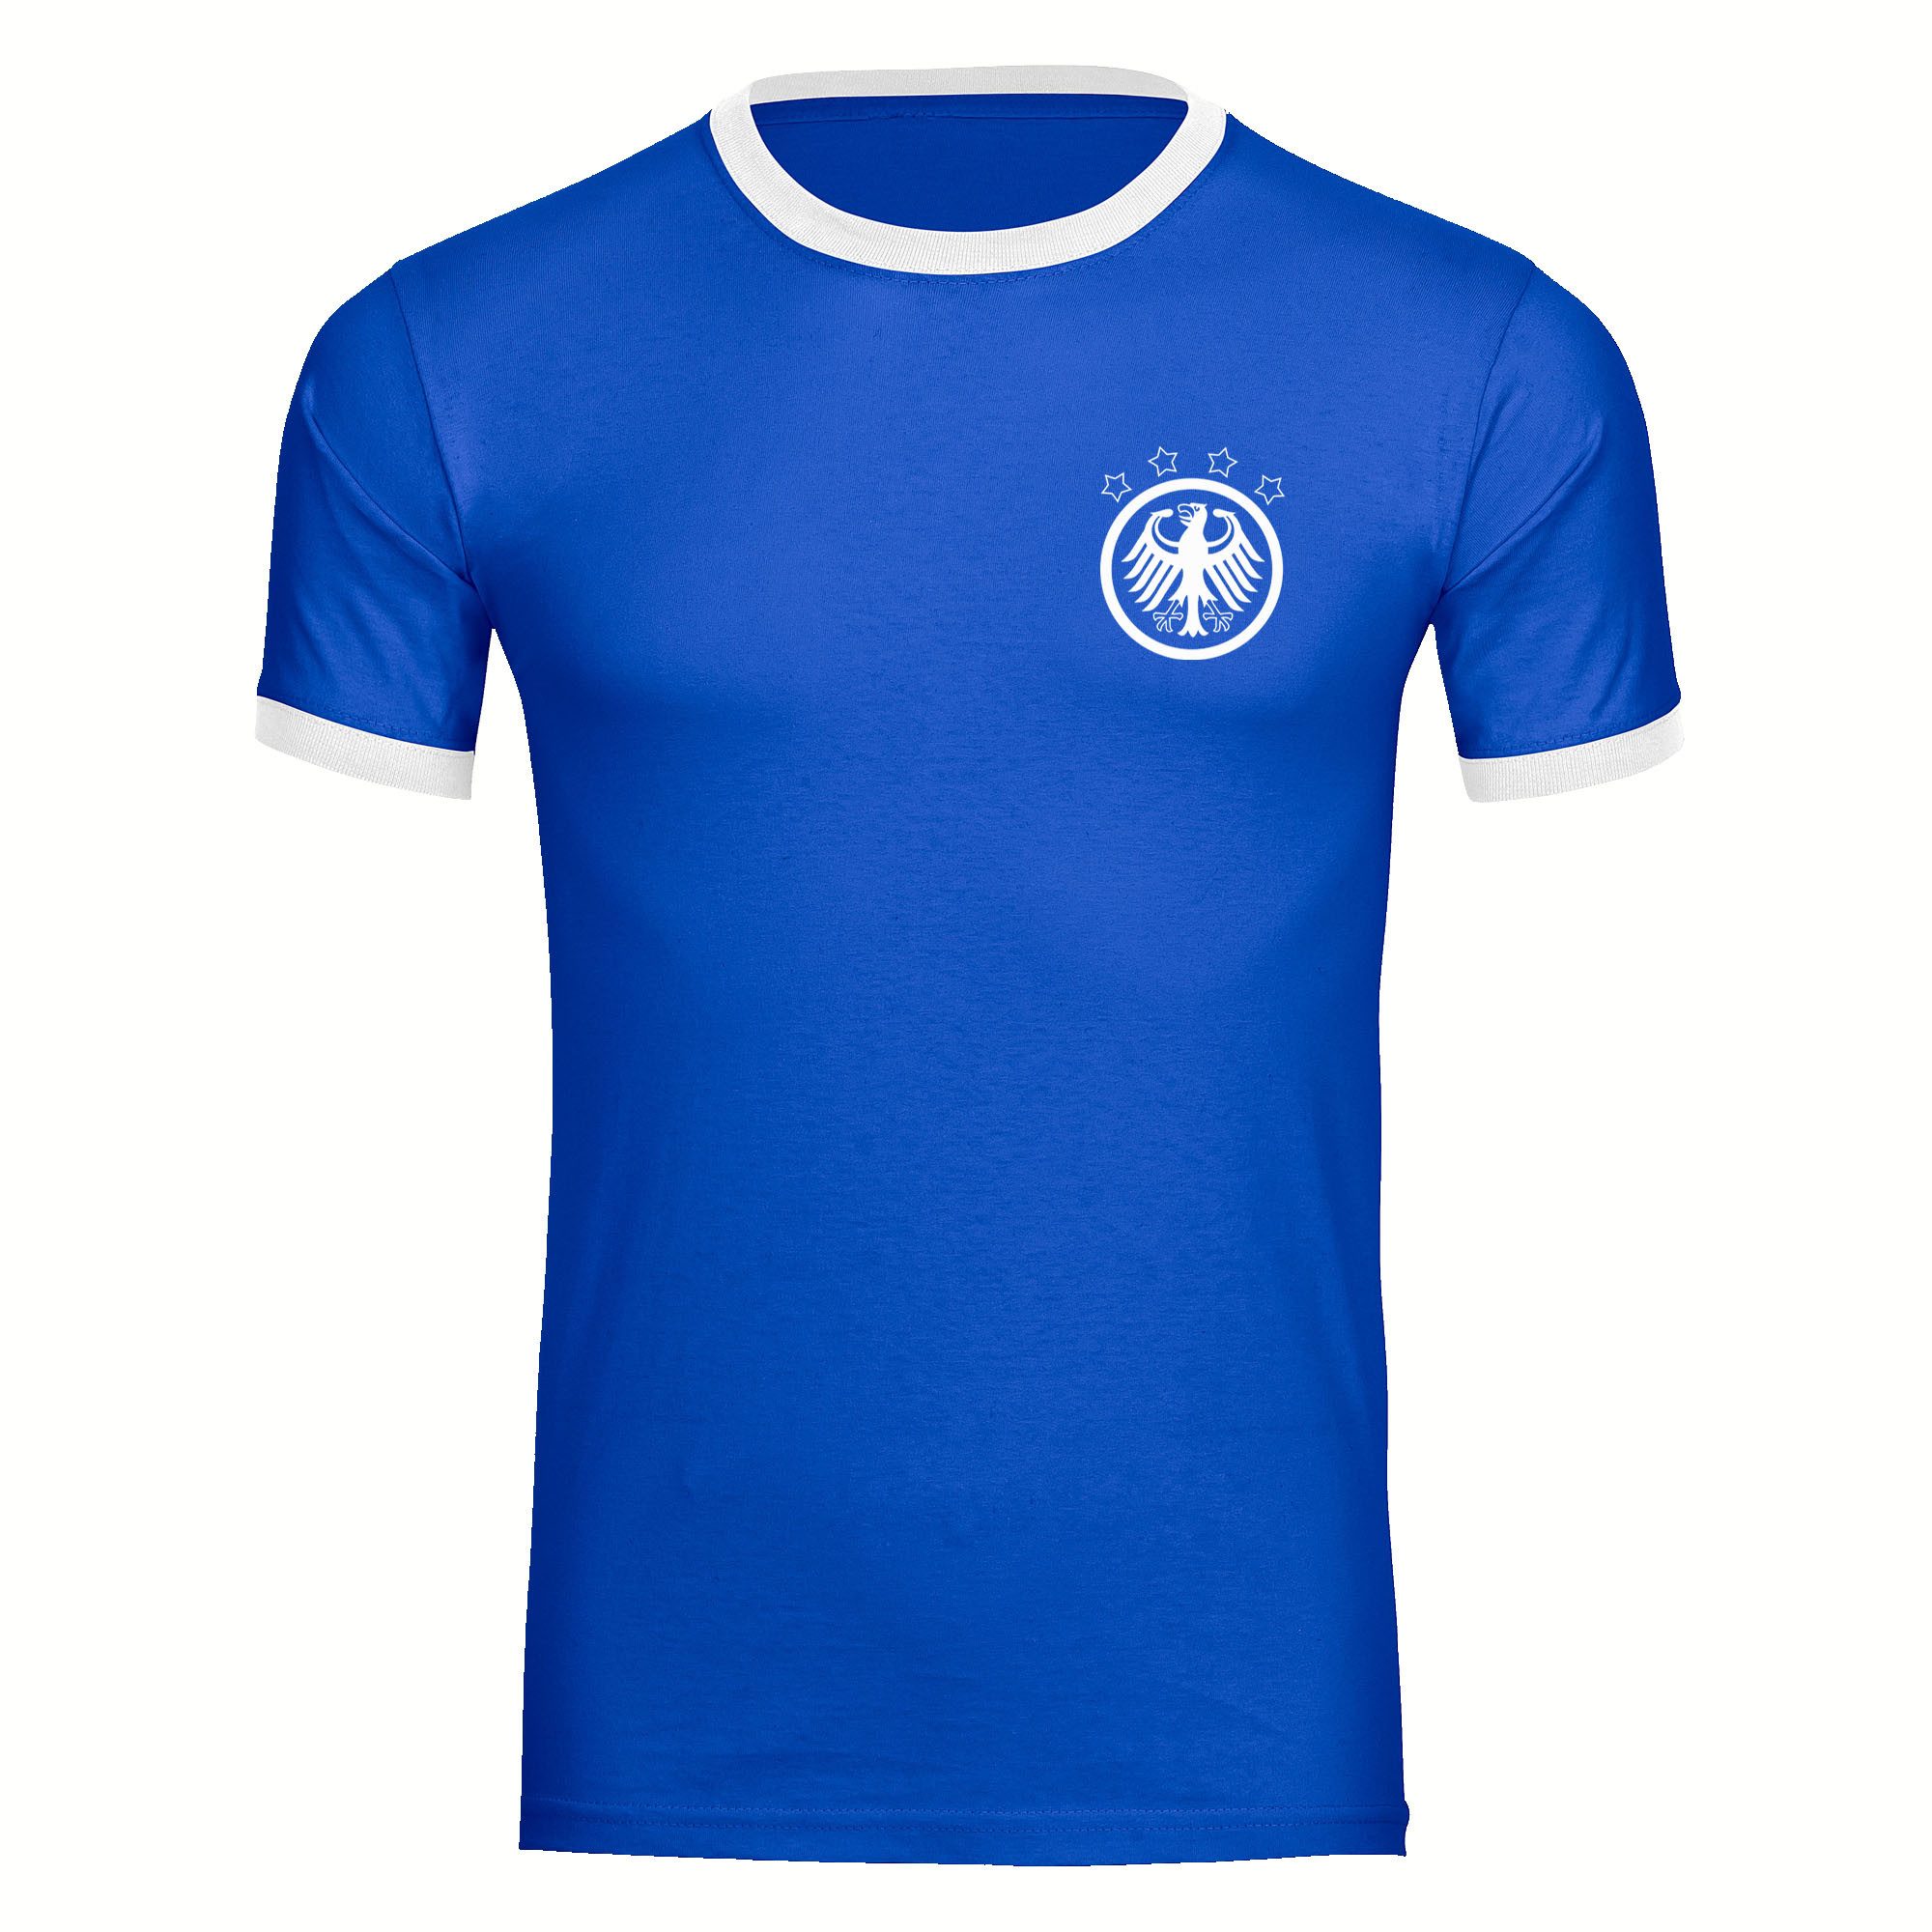 multifanshop T-Shirt Kontrast Germany - Adler Retro - Männer